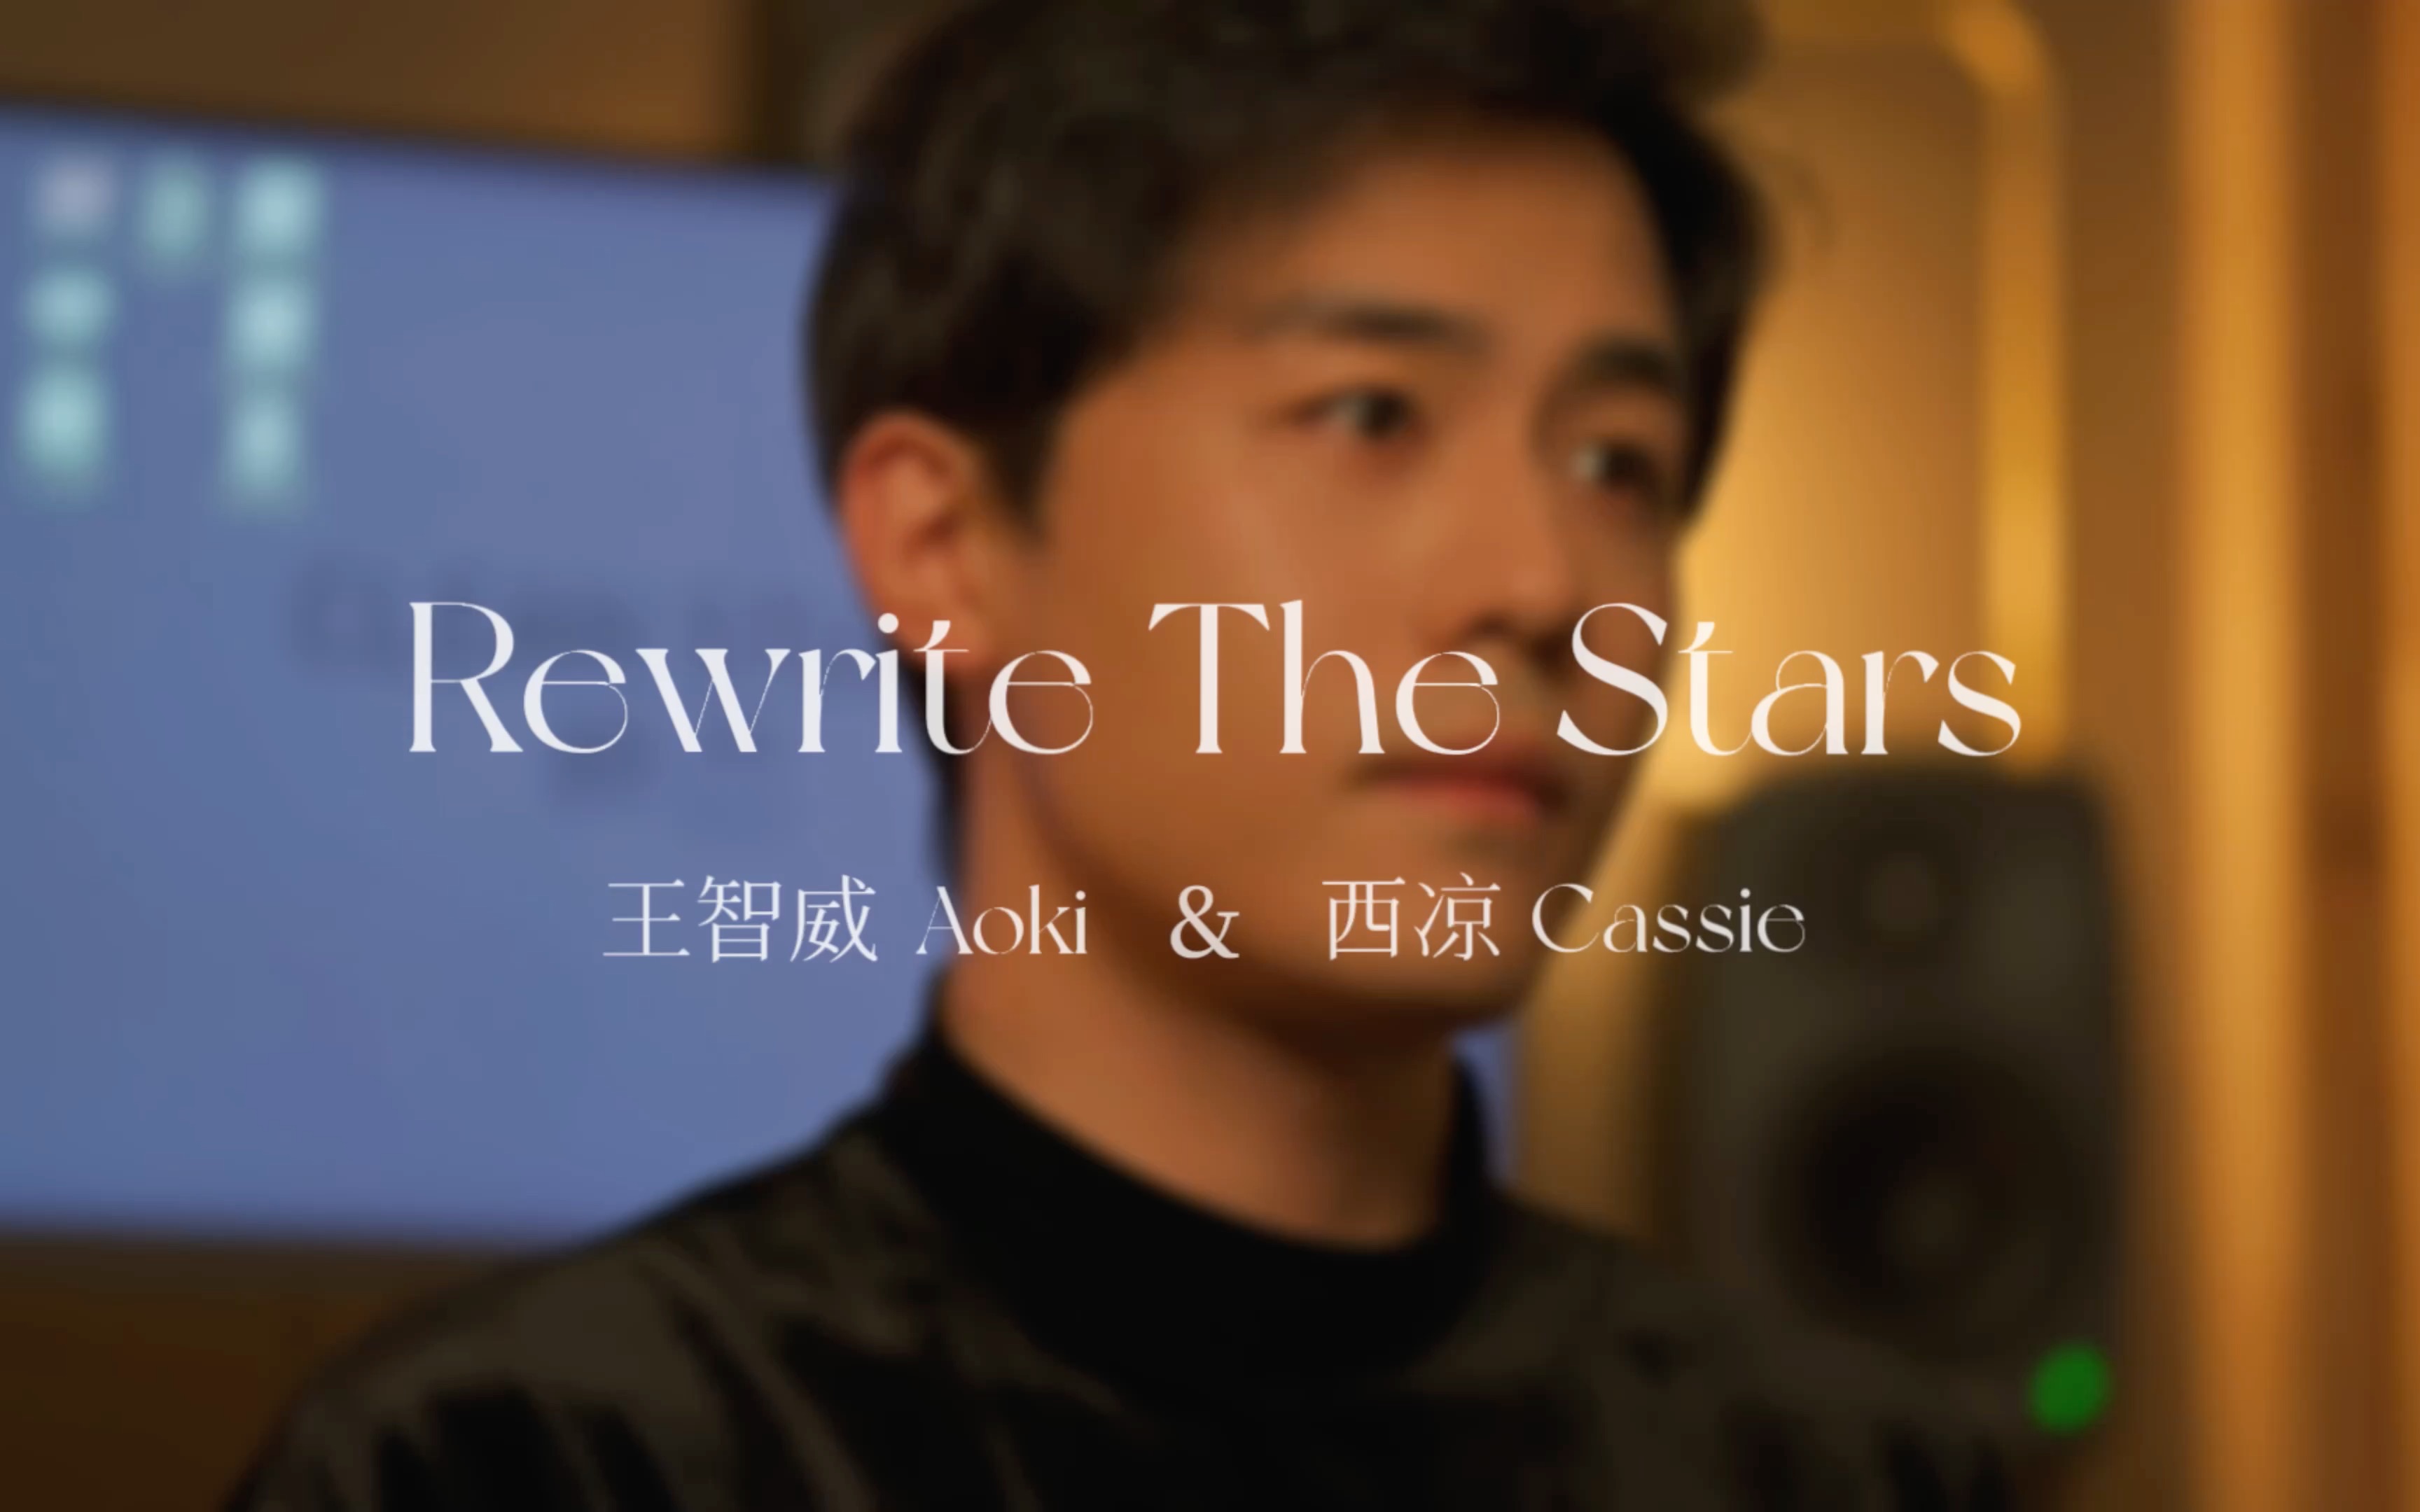 当和音乐剧演员男友一起录了最爱的《Rewrite the stars》